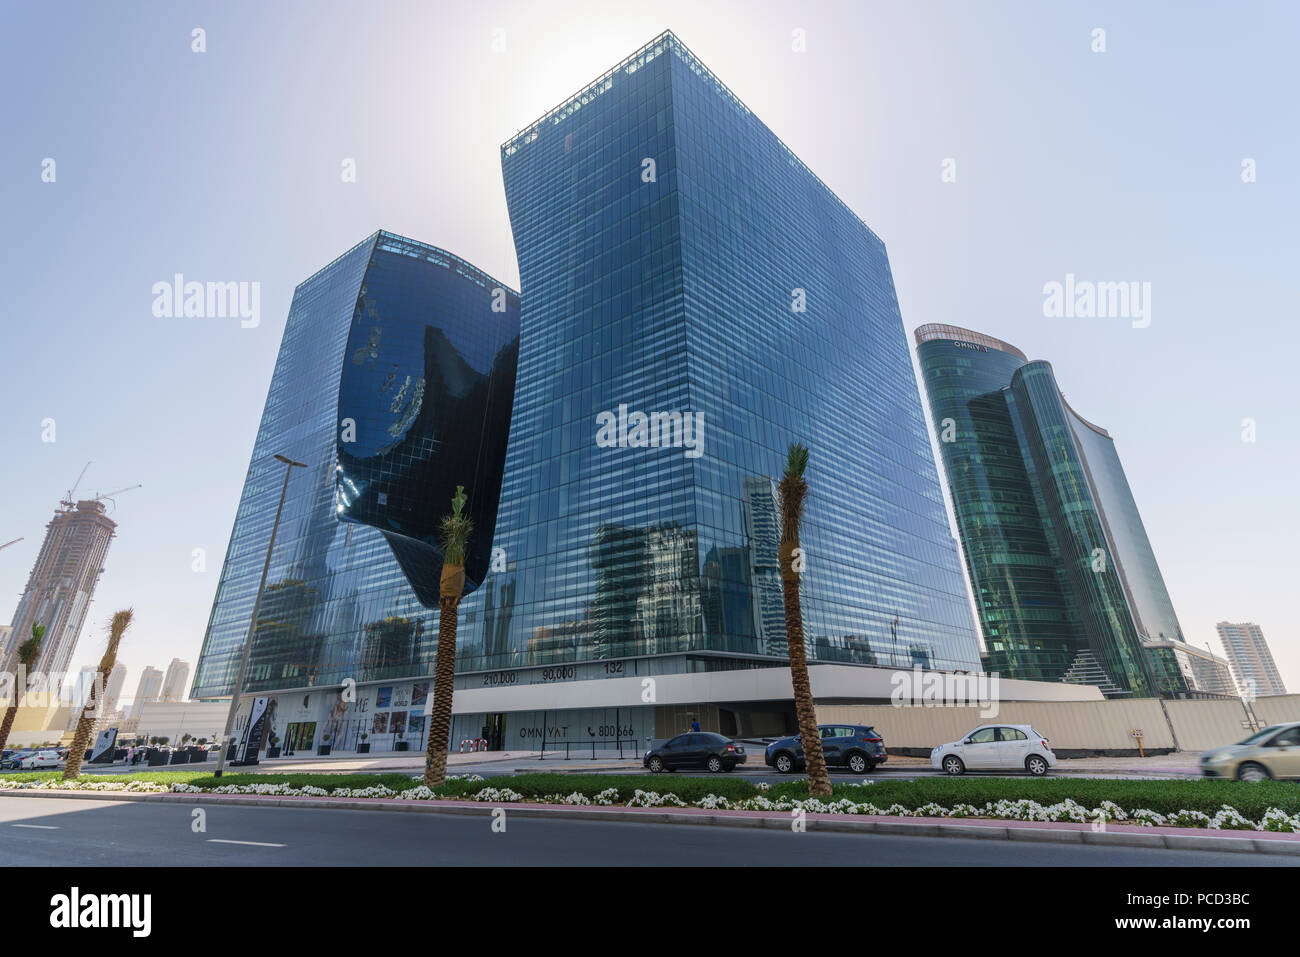 L'Opus Building conçu par l'architecte Zaha Hadid, Business Bay, Dubaï, Émirats arabes unis, Moyen Orient Banque D'Images